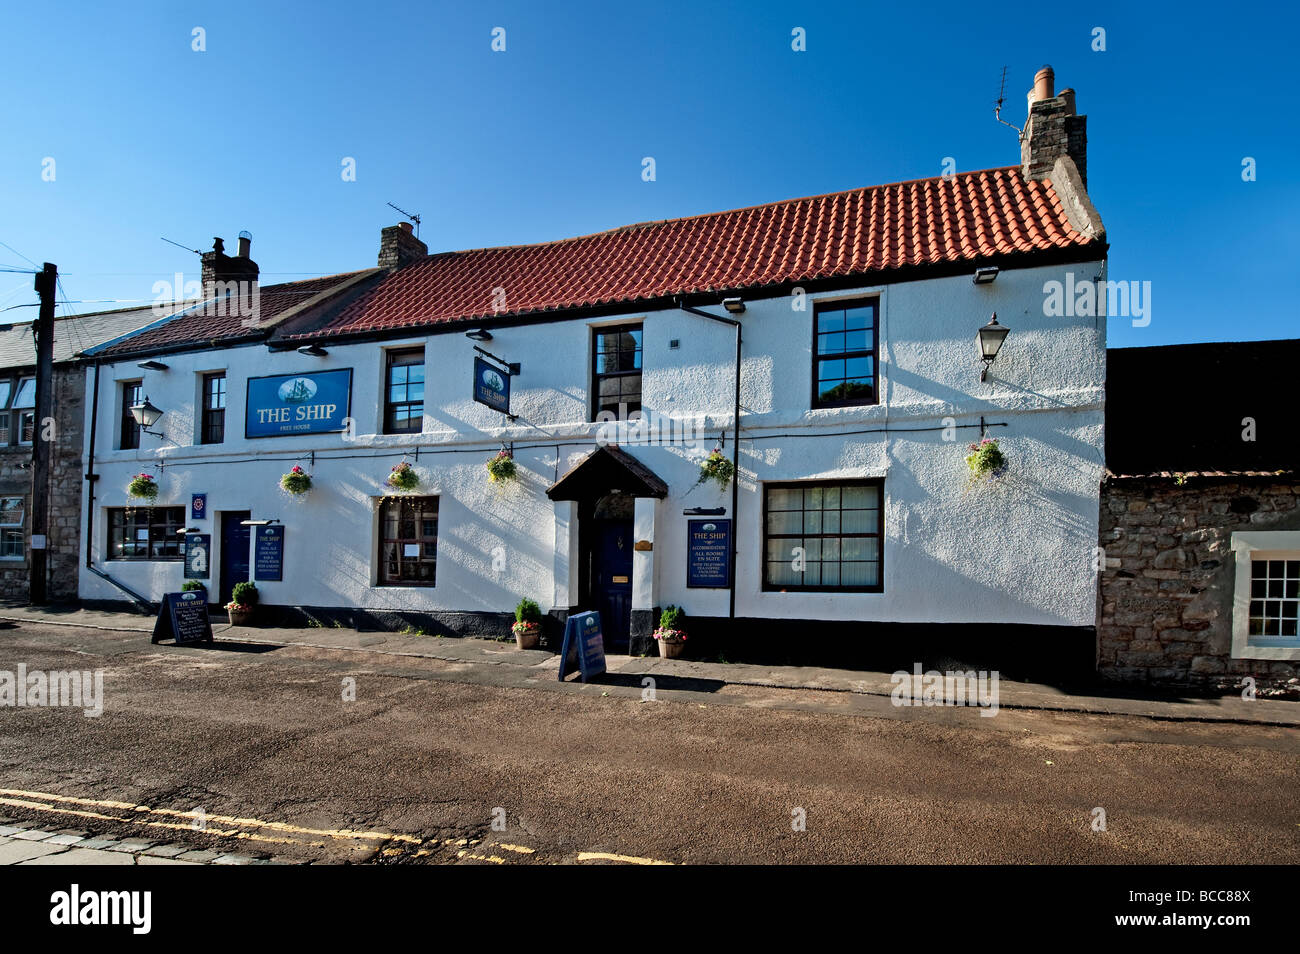 La nave Inn una casa pubblica la Marygate area di Lindisfarne village. Foto Stock